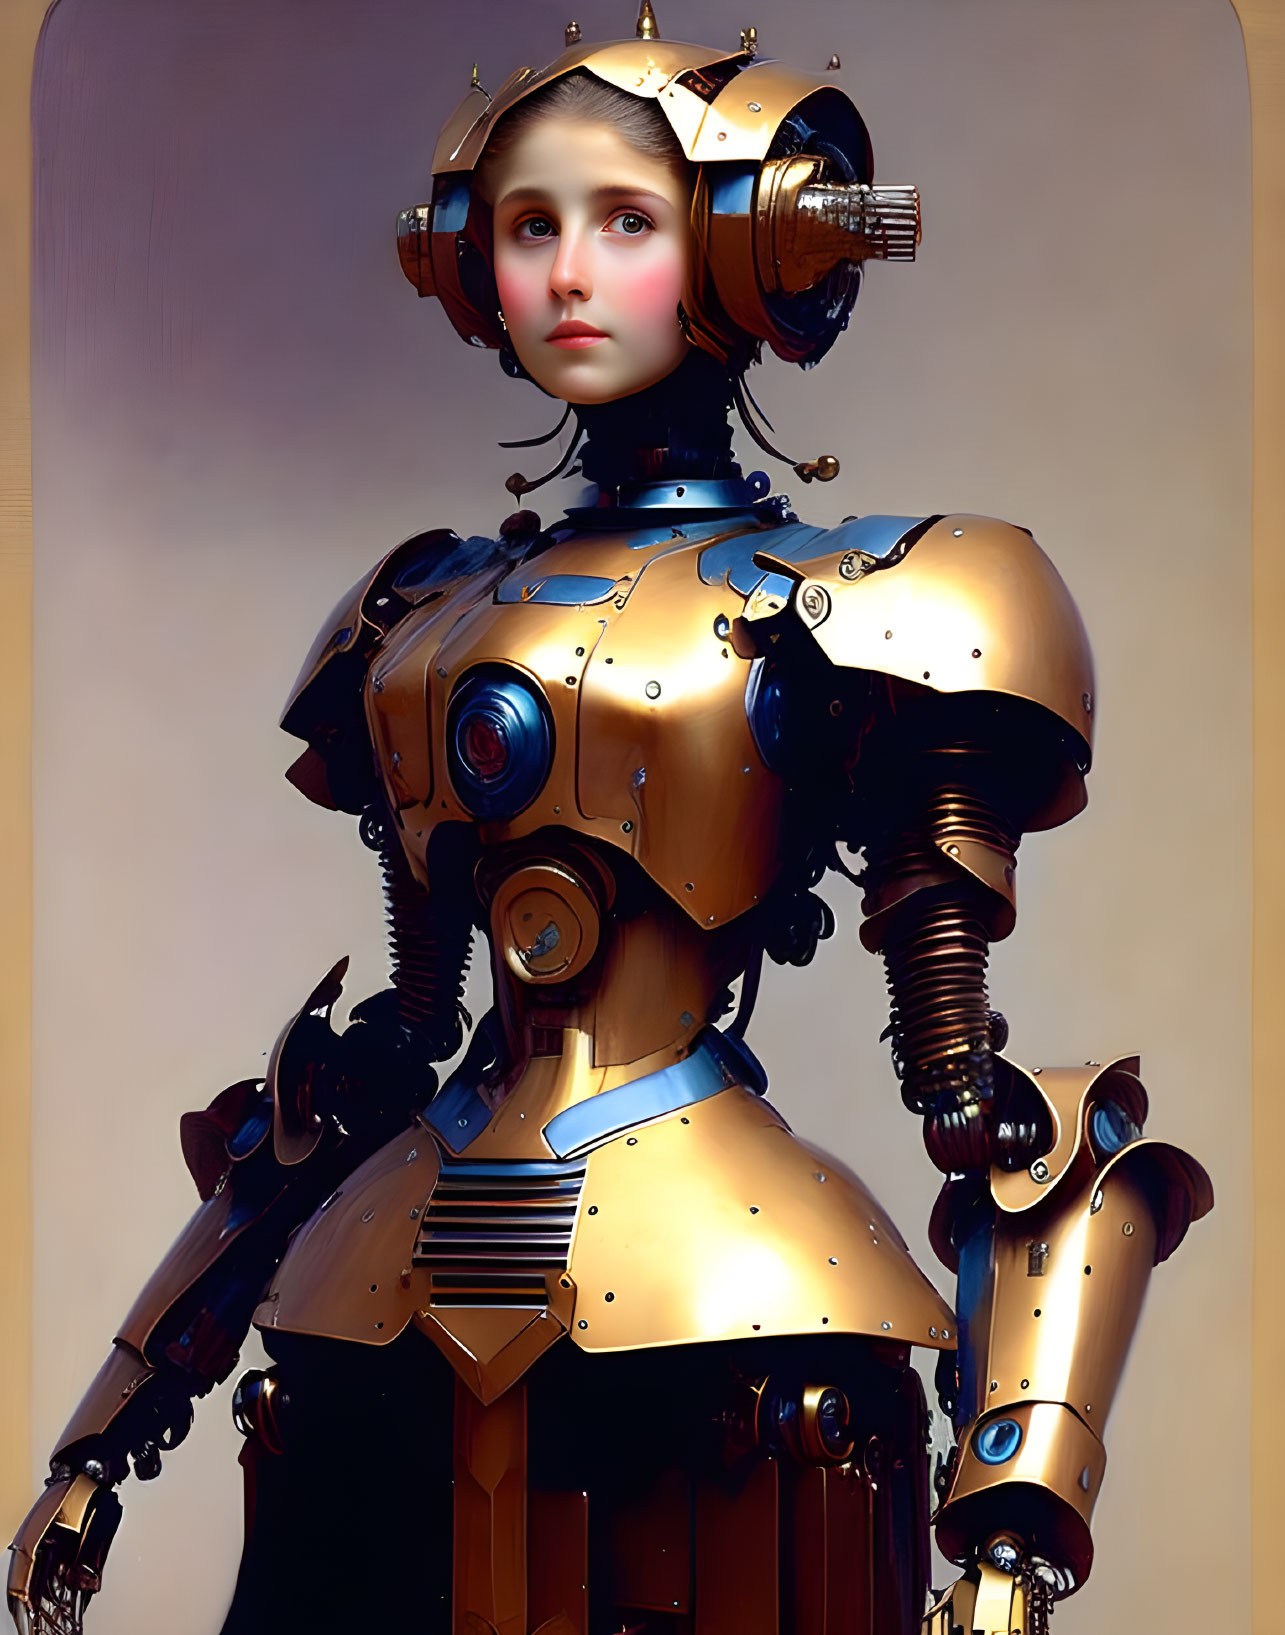 Robo girl